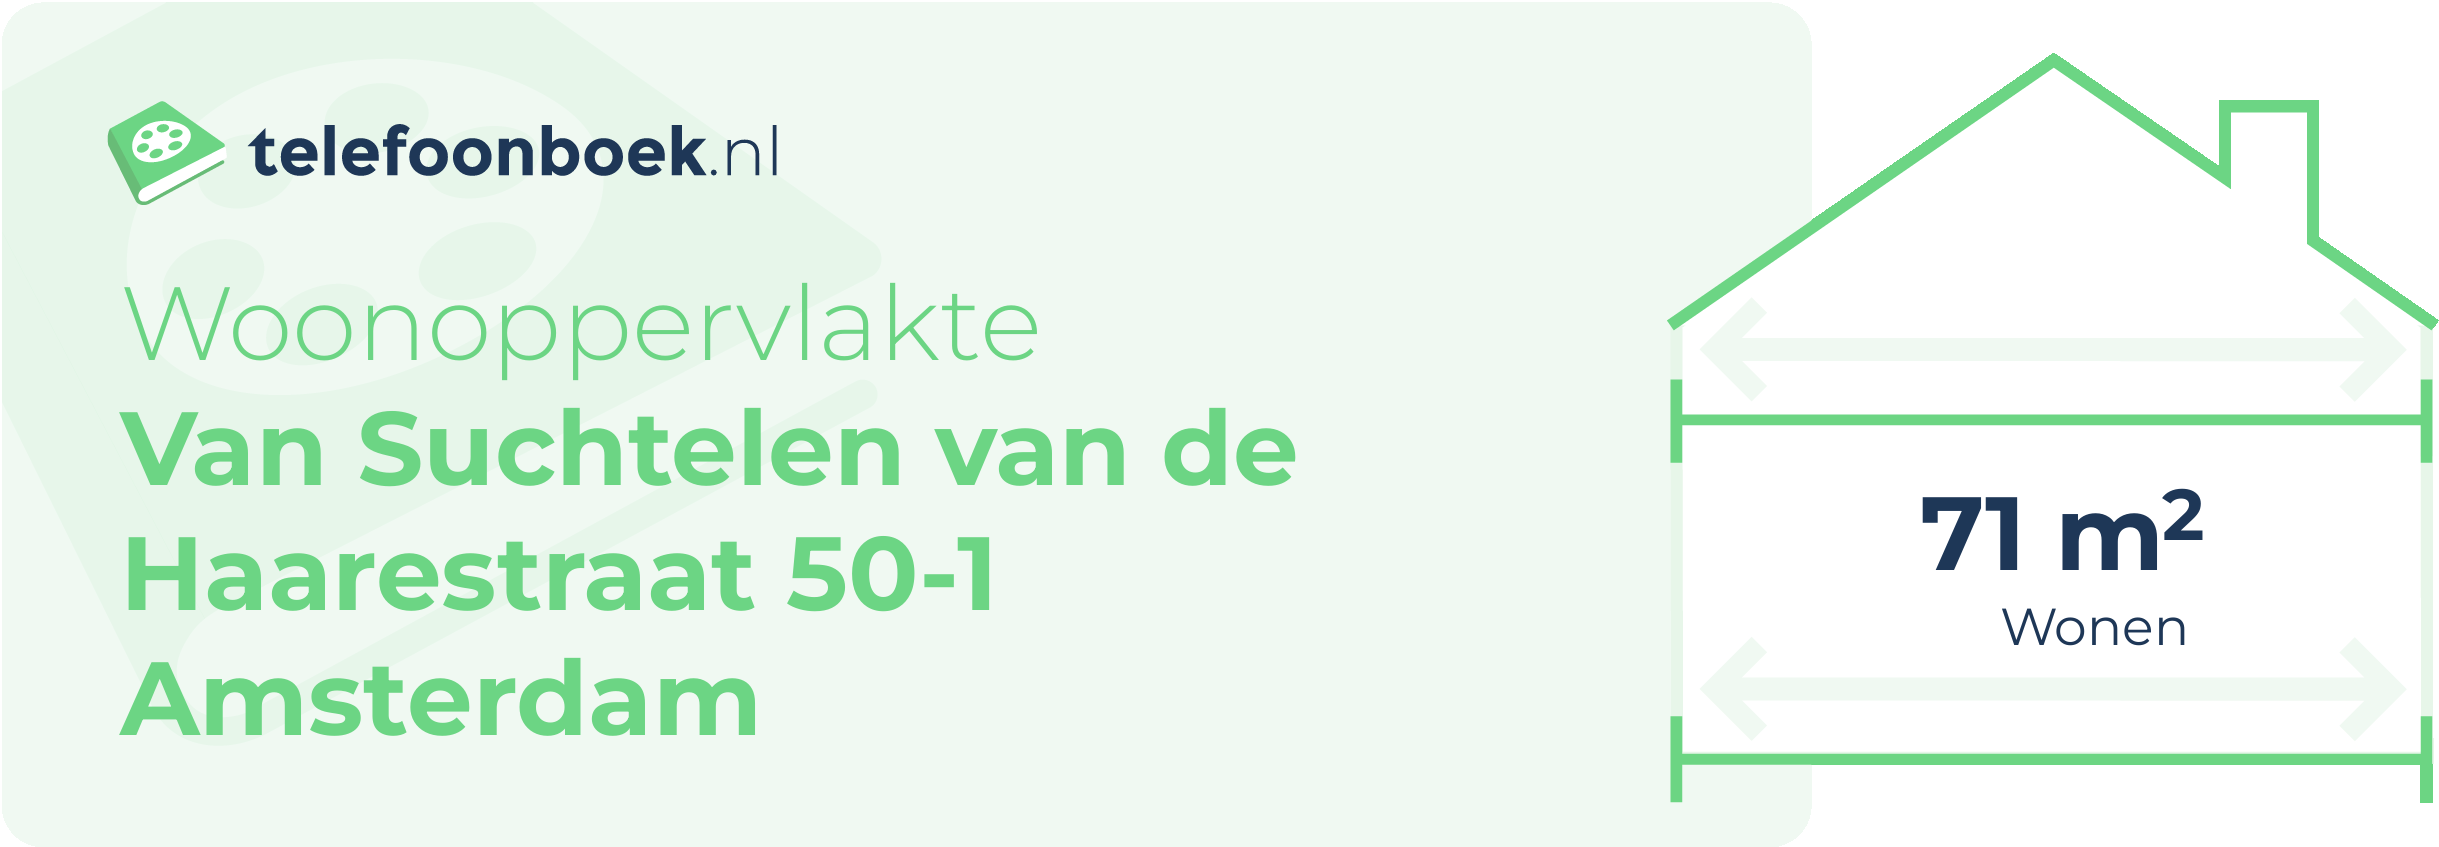 Woonoppervlakte Van Suchtelen Van De Haarestraat 50-1 Amsterdam